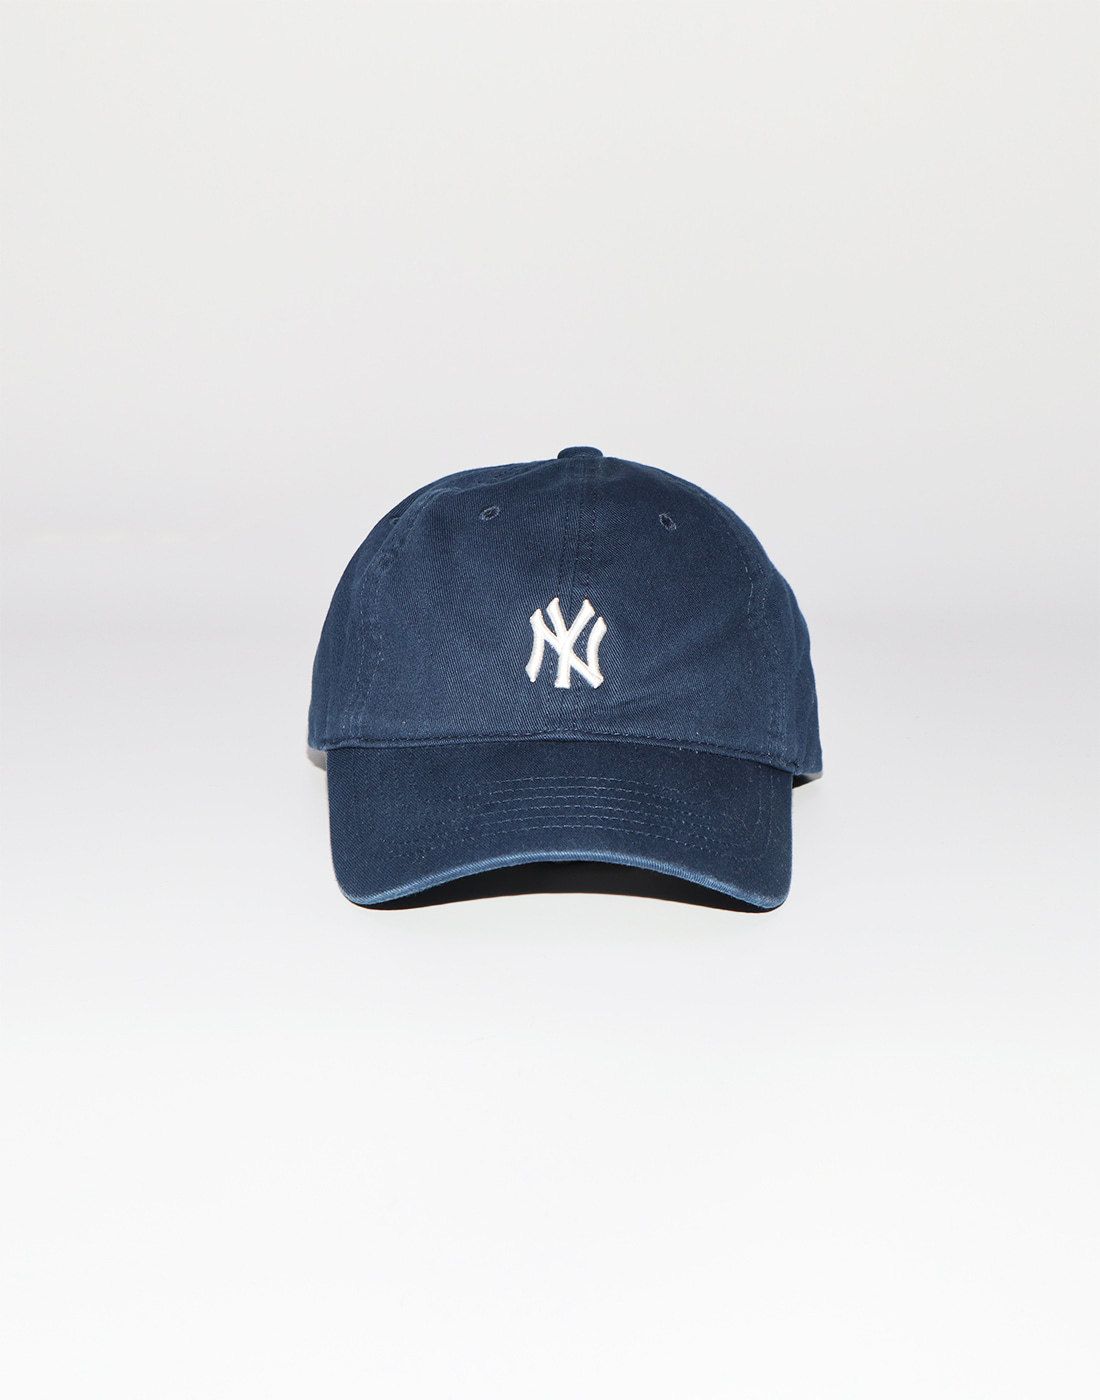 MLB NY Small Logo Ball Cap, Navy